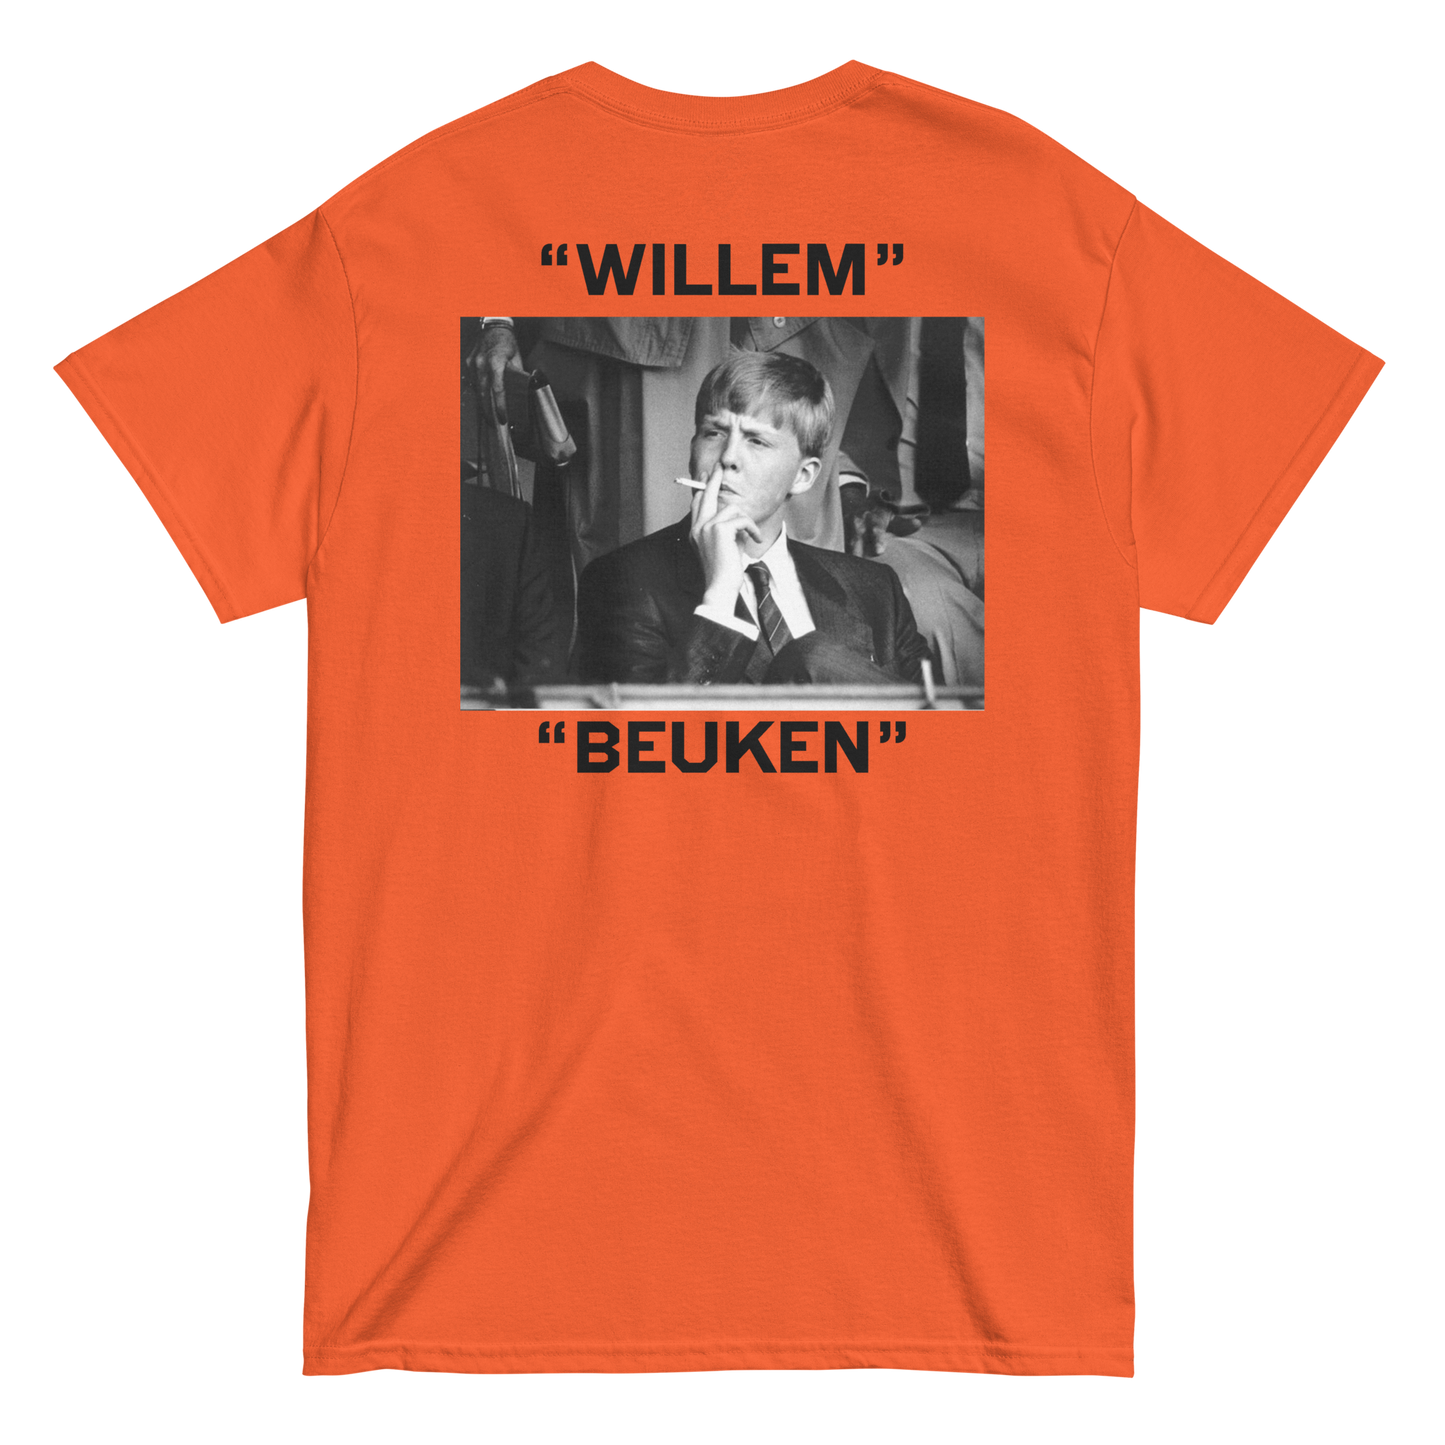 "WILLEM BEUKEN" - T-shirt